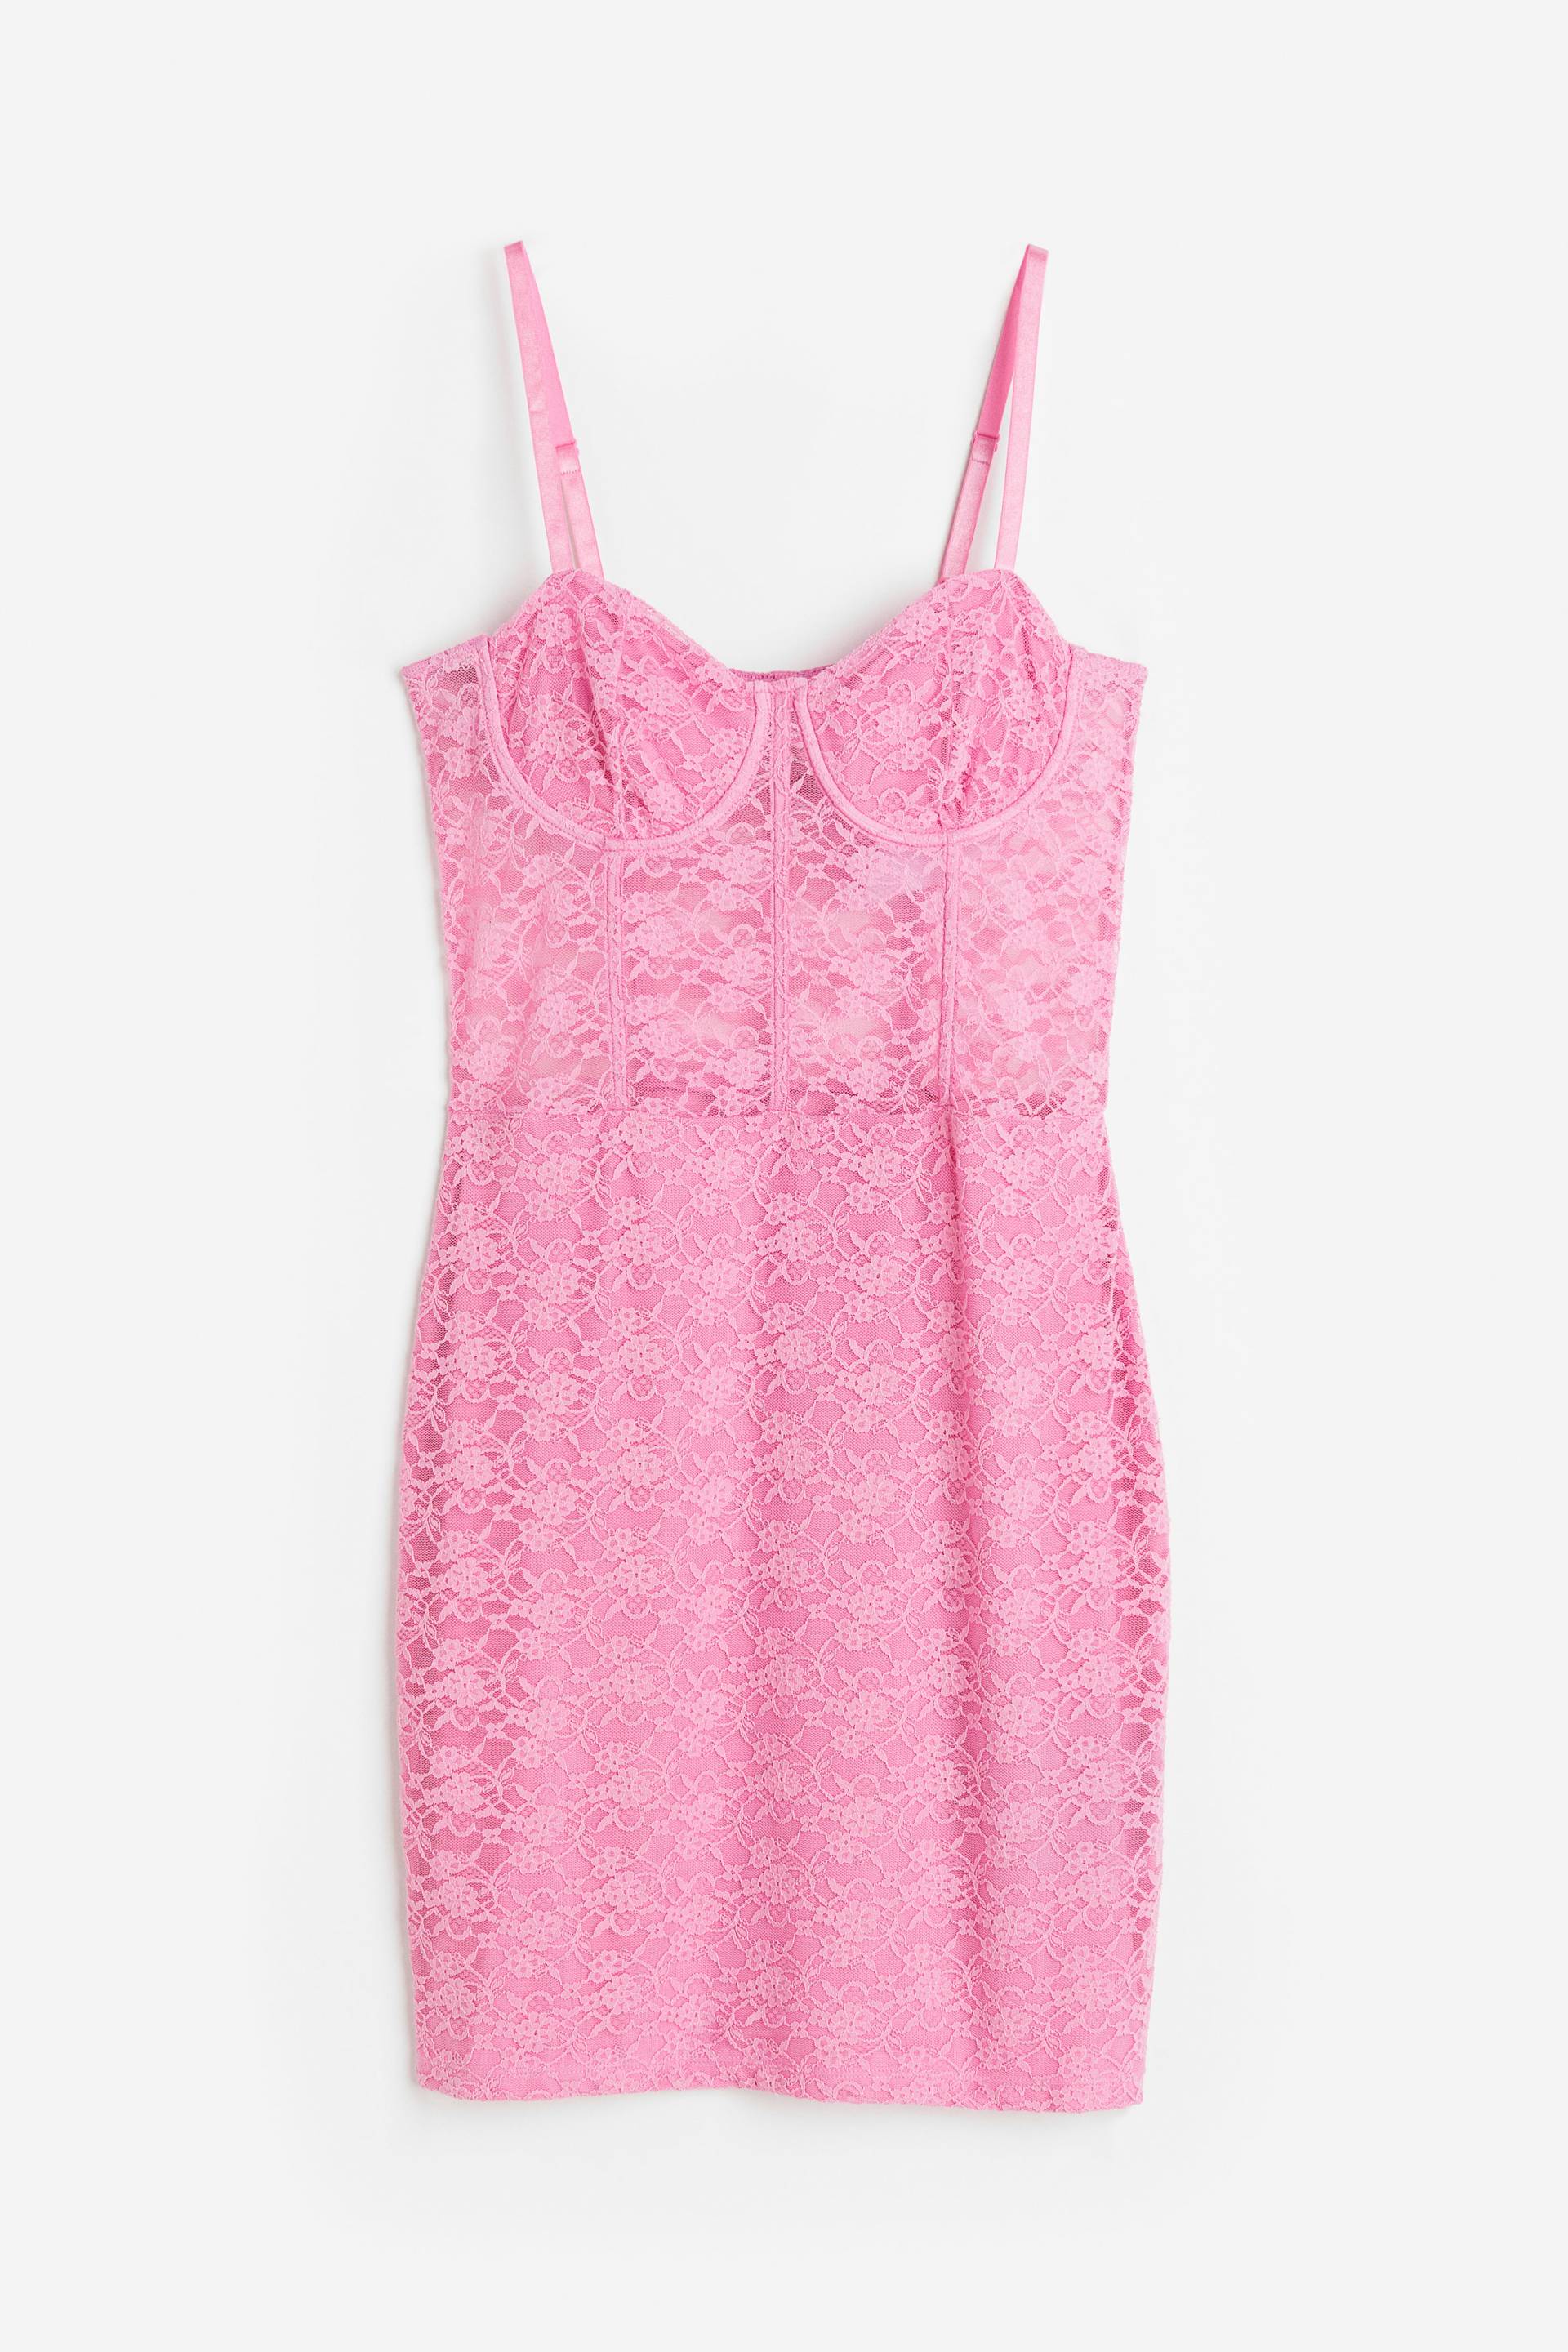 H&M Korsagenkleid aus Spitze Rosa, Party kleider in Größe S. Farbe: Pink von H&M